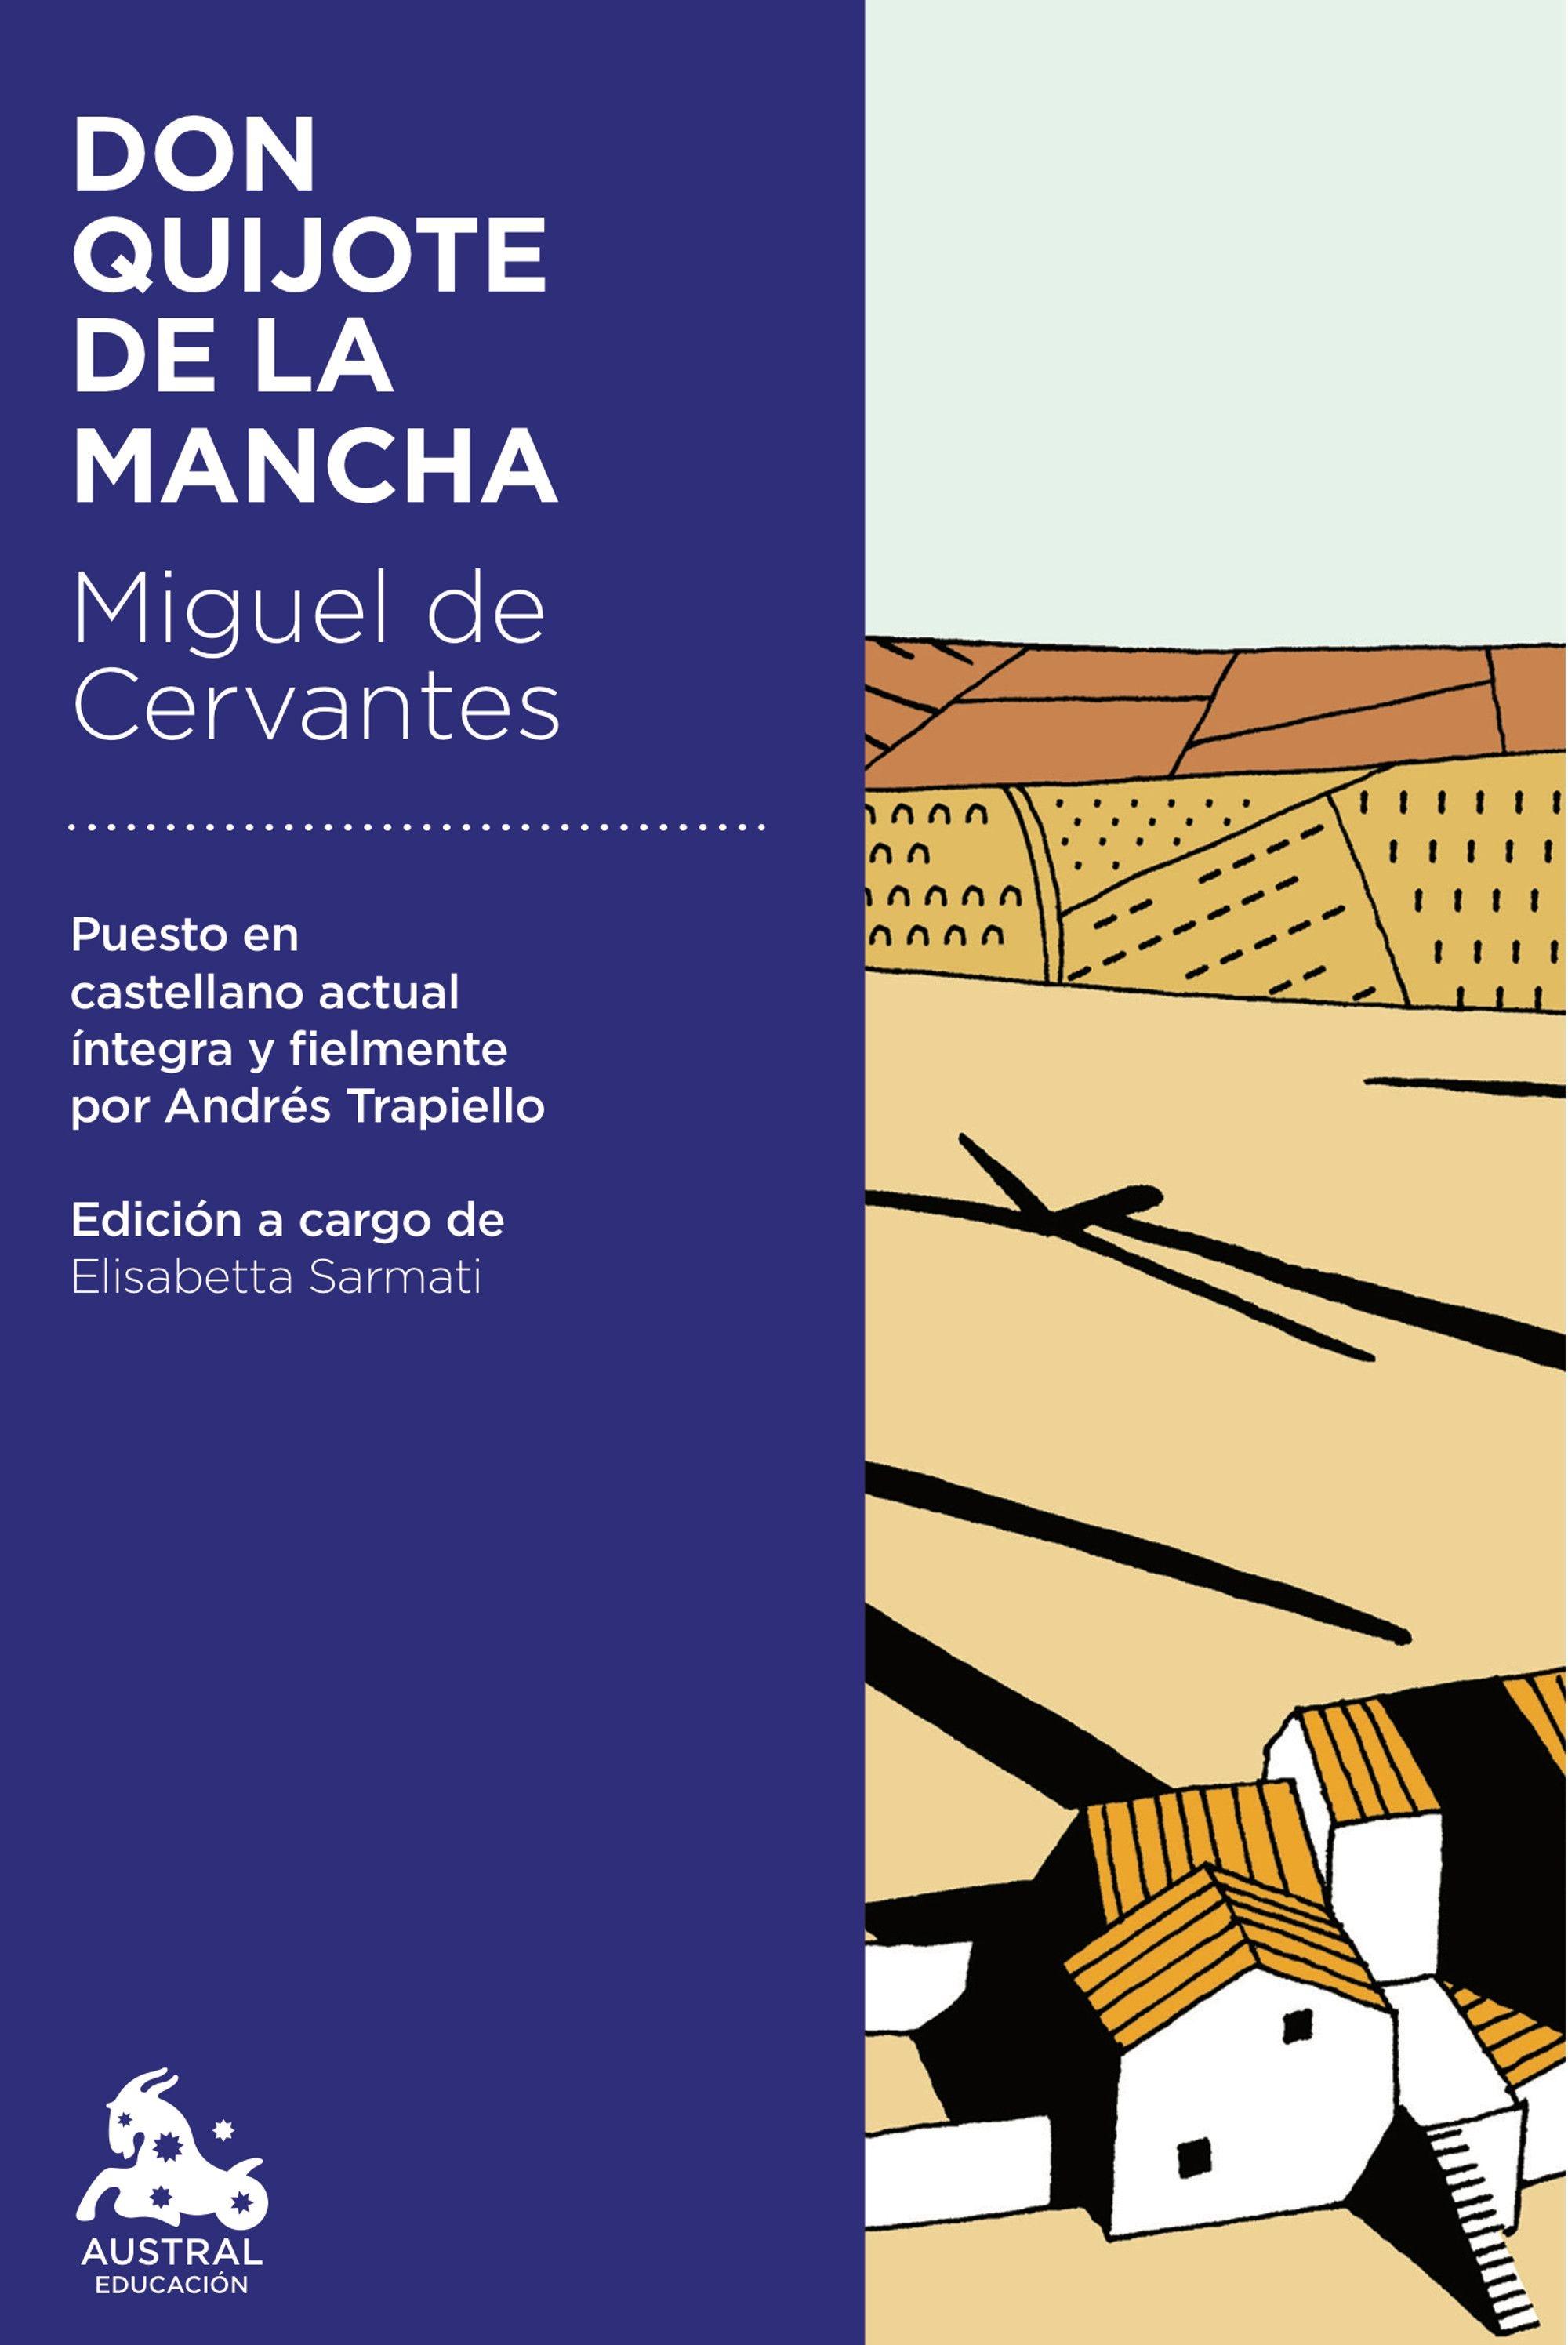 Don Quijote de la Mancha "Selección". 